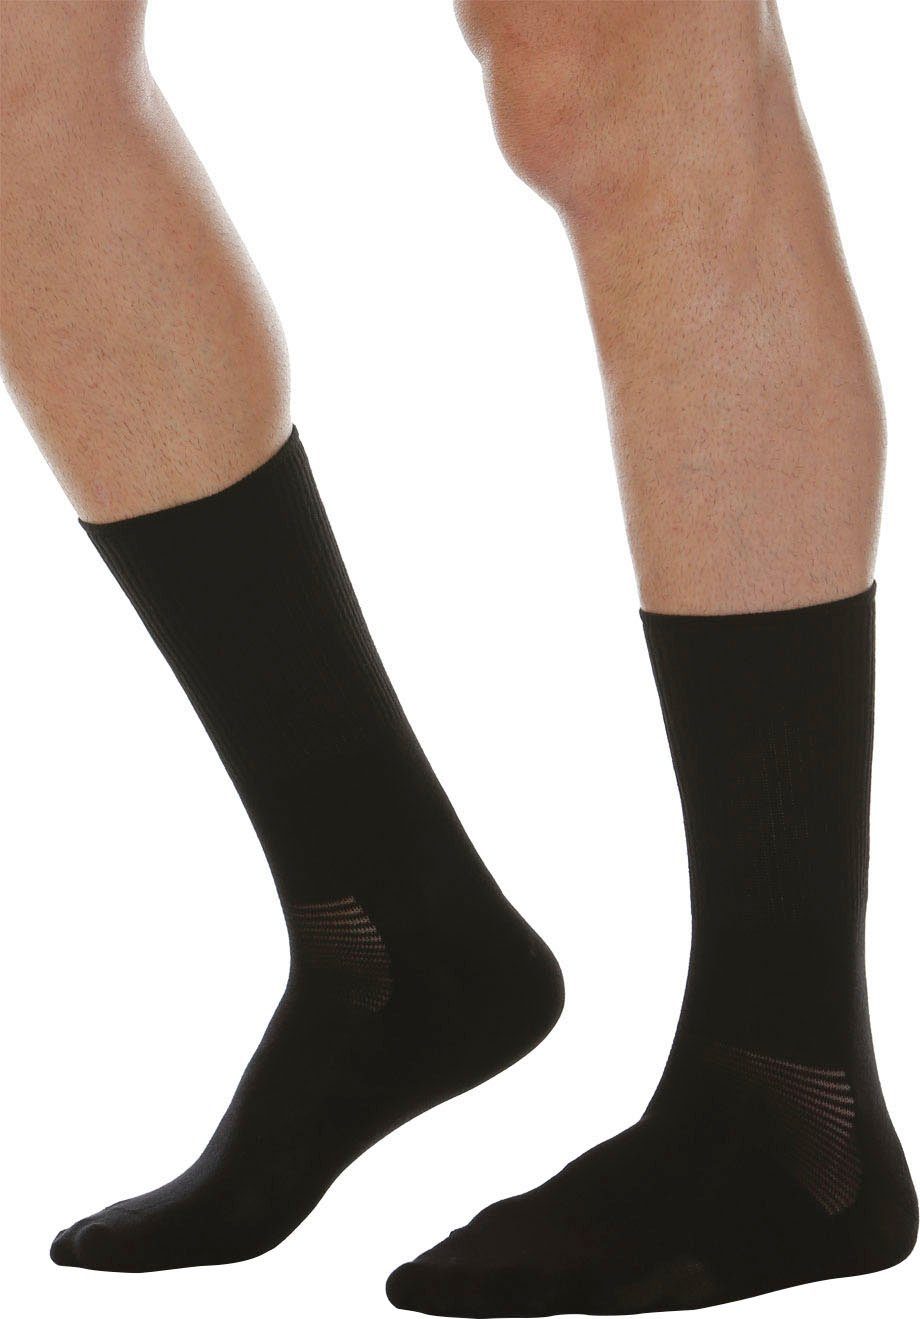 RELAXSAN Diabetikersocken Crabyonfaser Diabetic Socke schwarz (1-Paar) mit